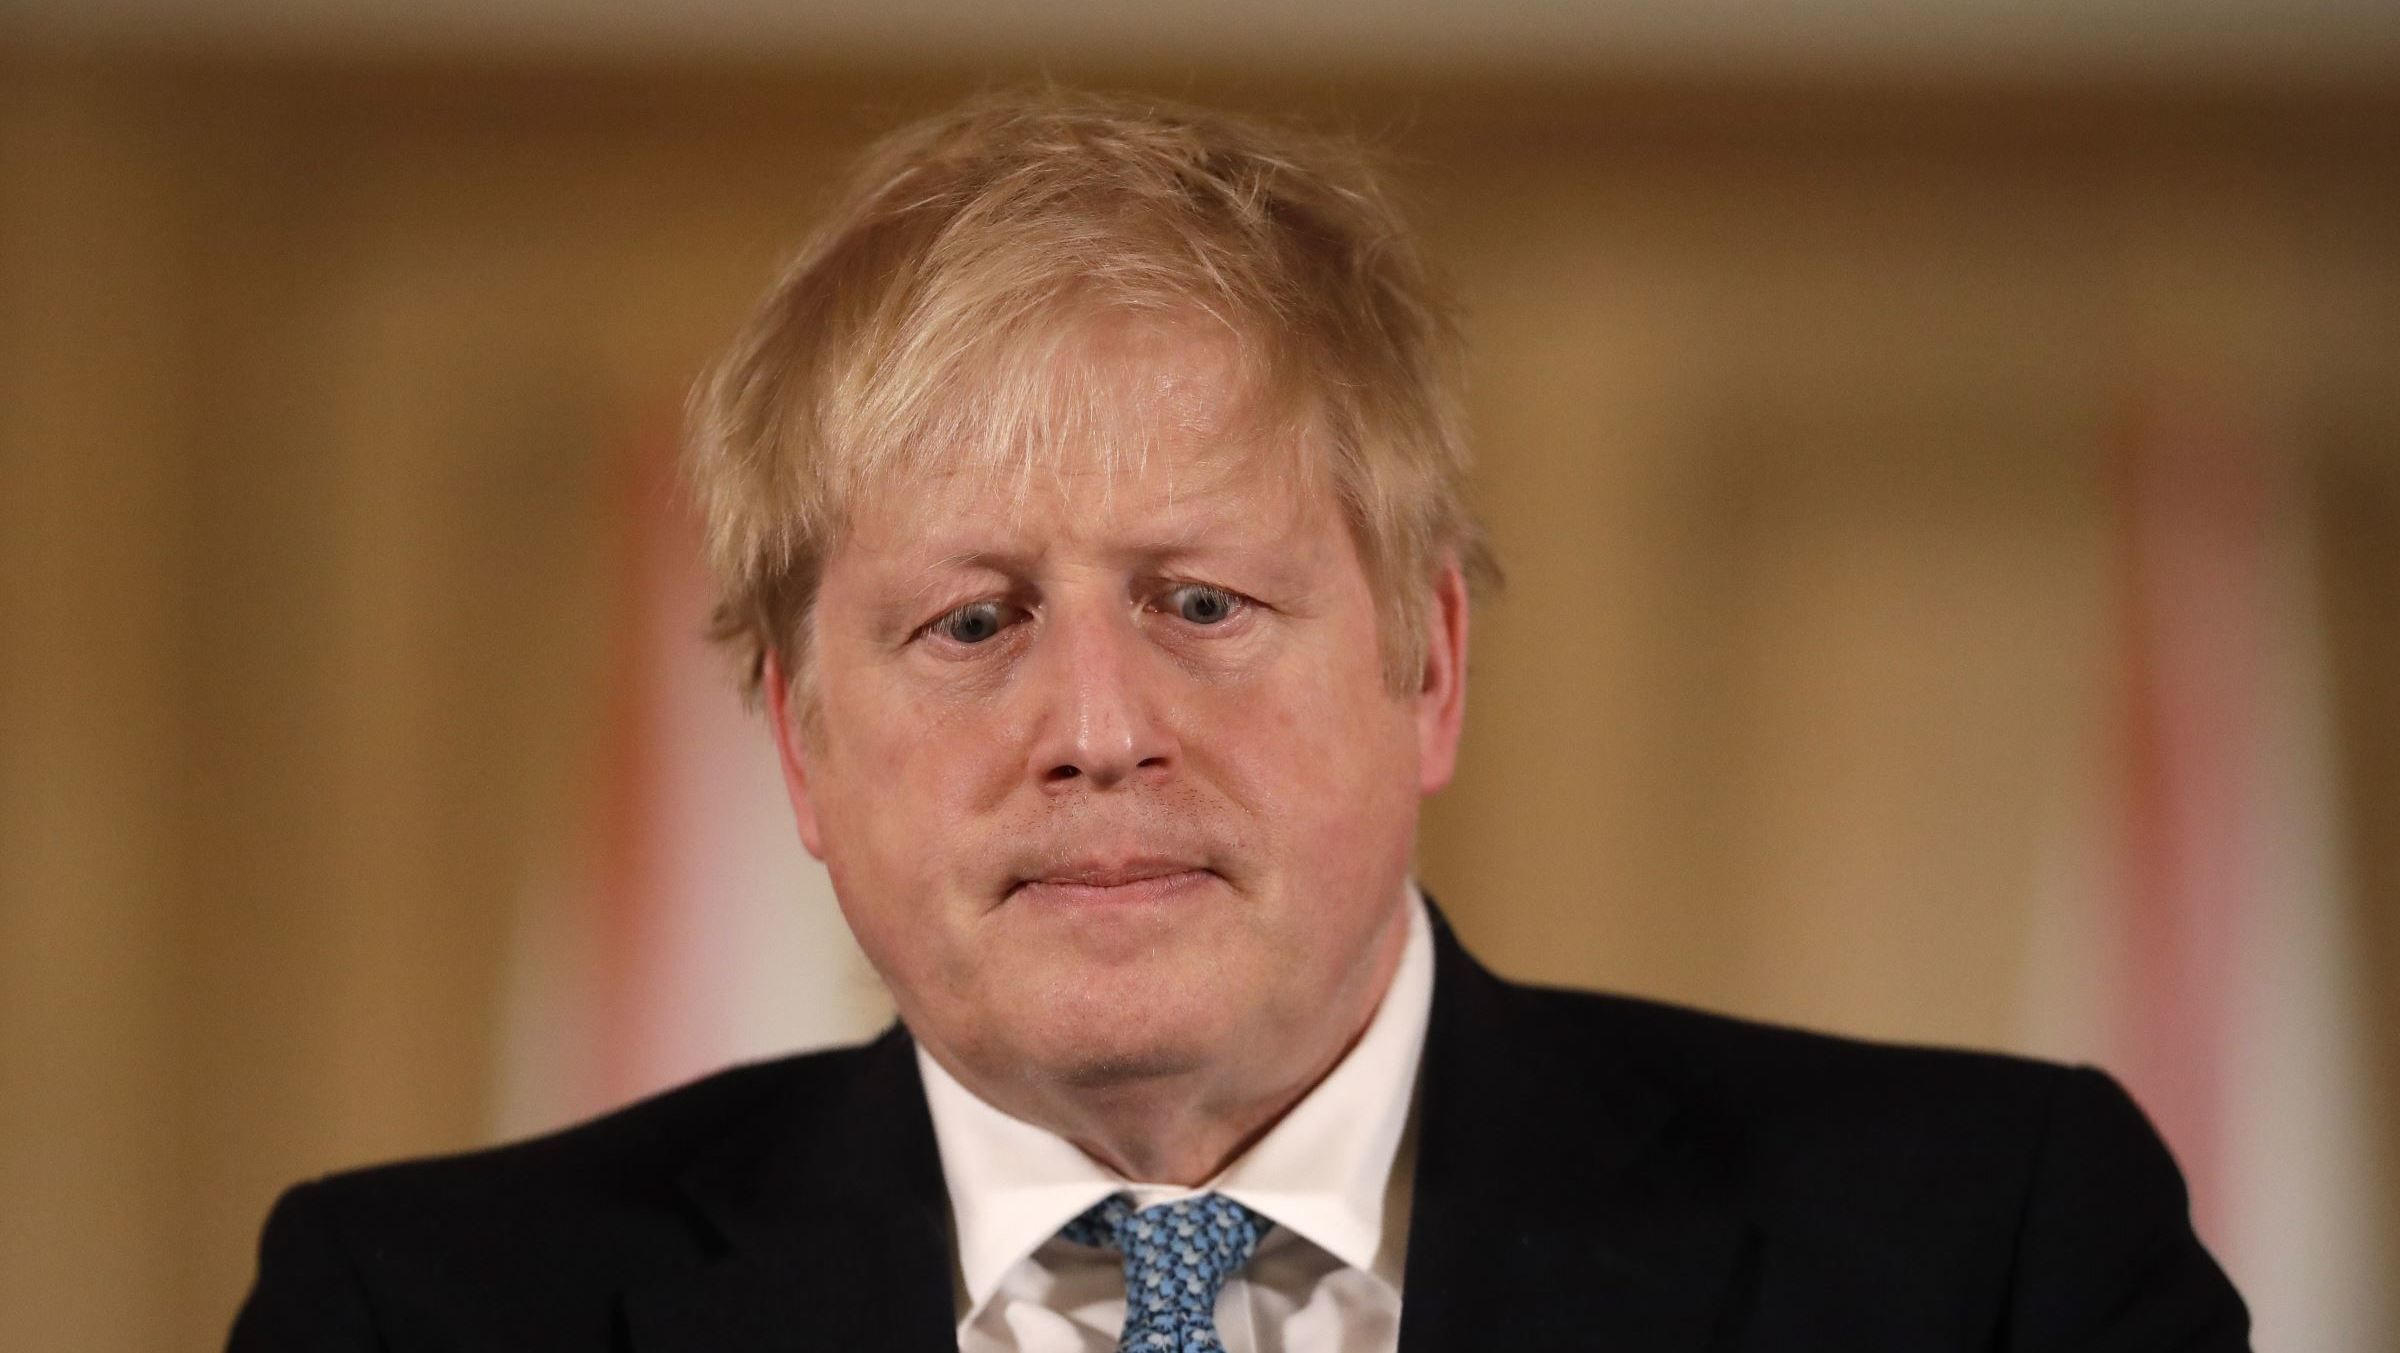 “Partygate” : 5 proches de Boris Johnson le lâchent, le “Premier ministre est fini”